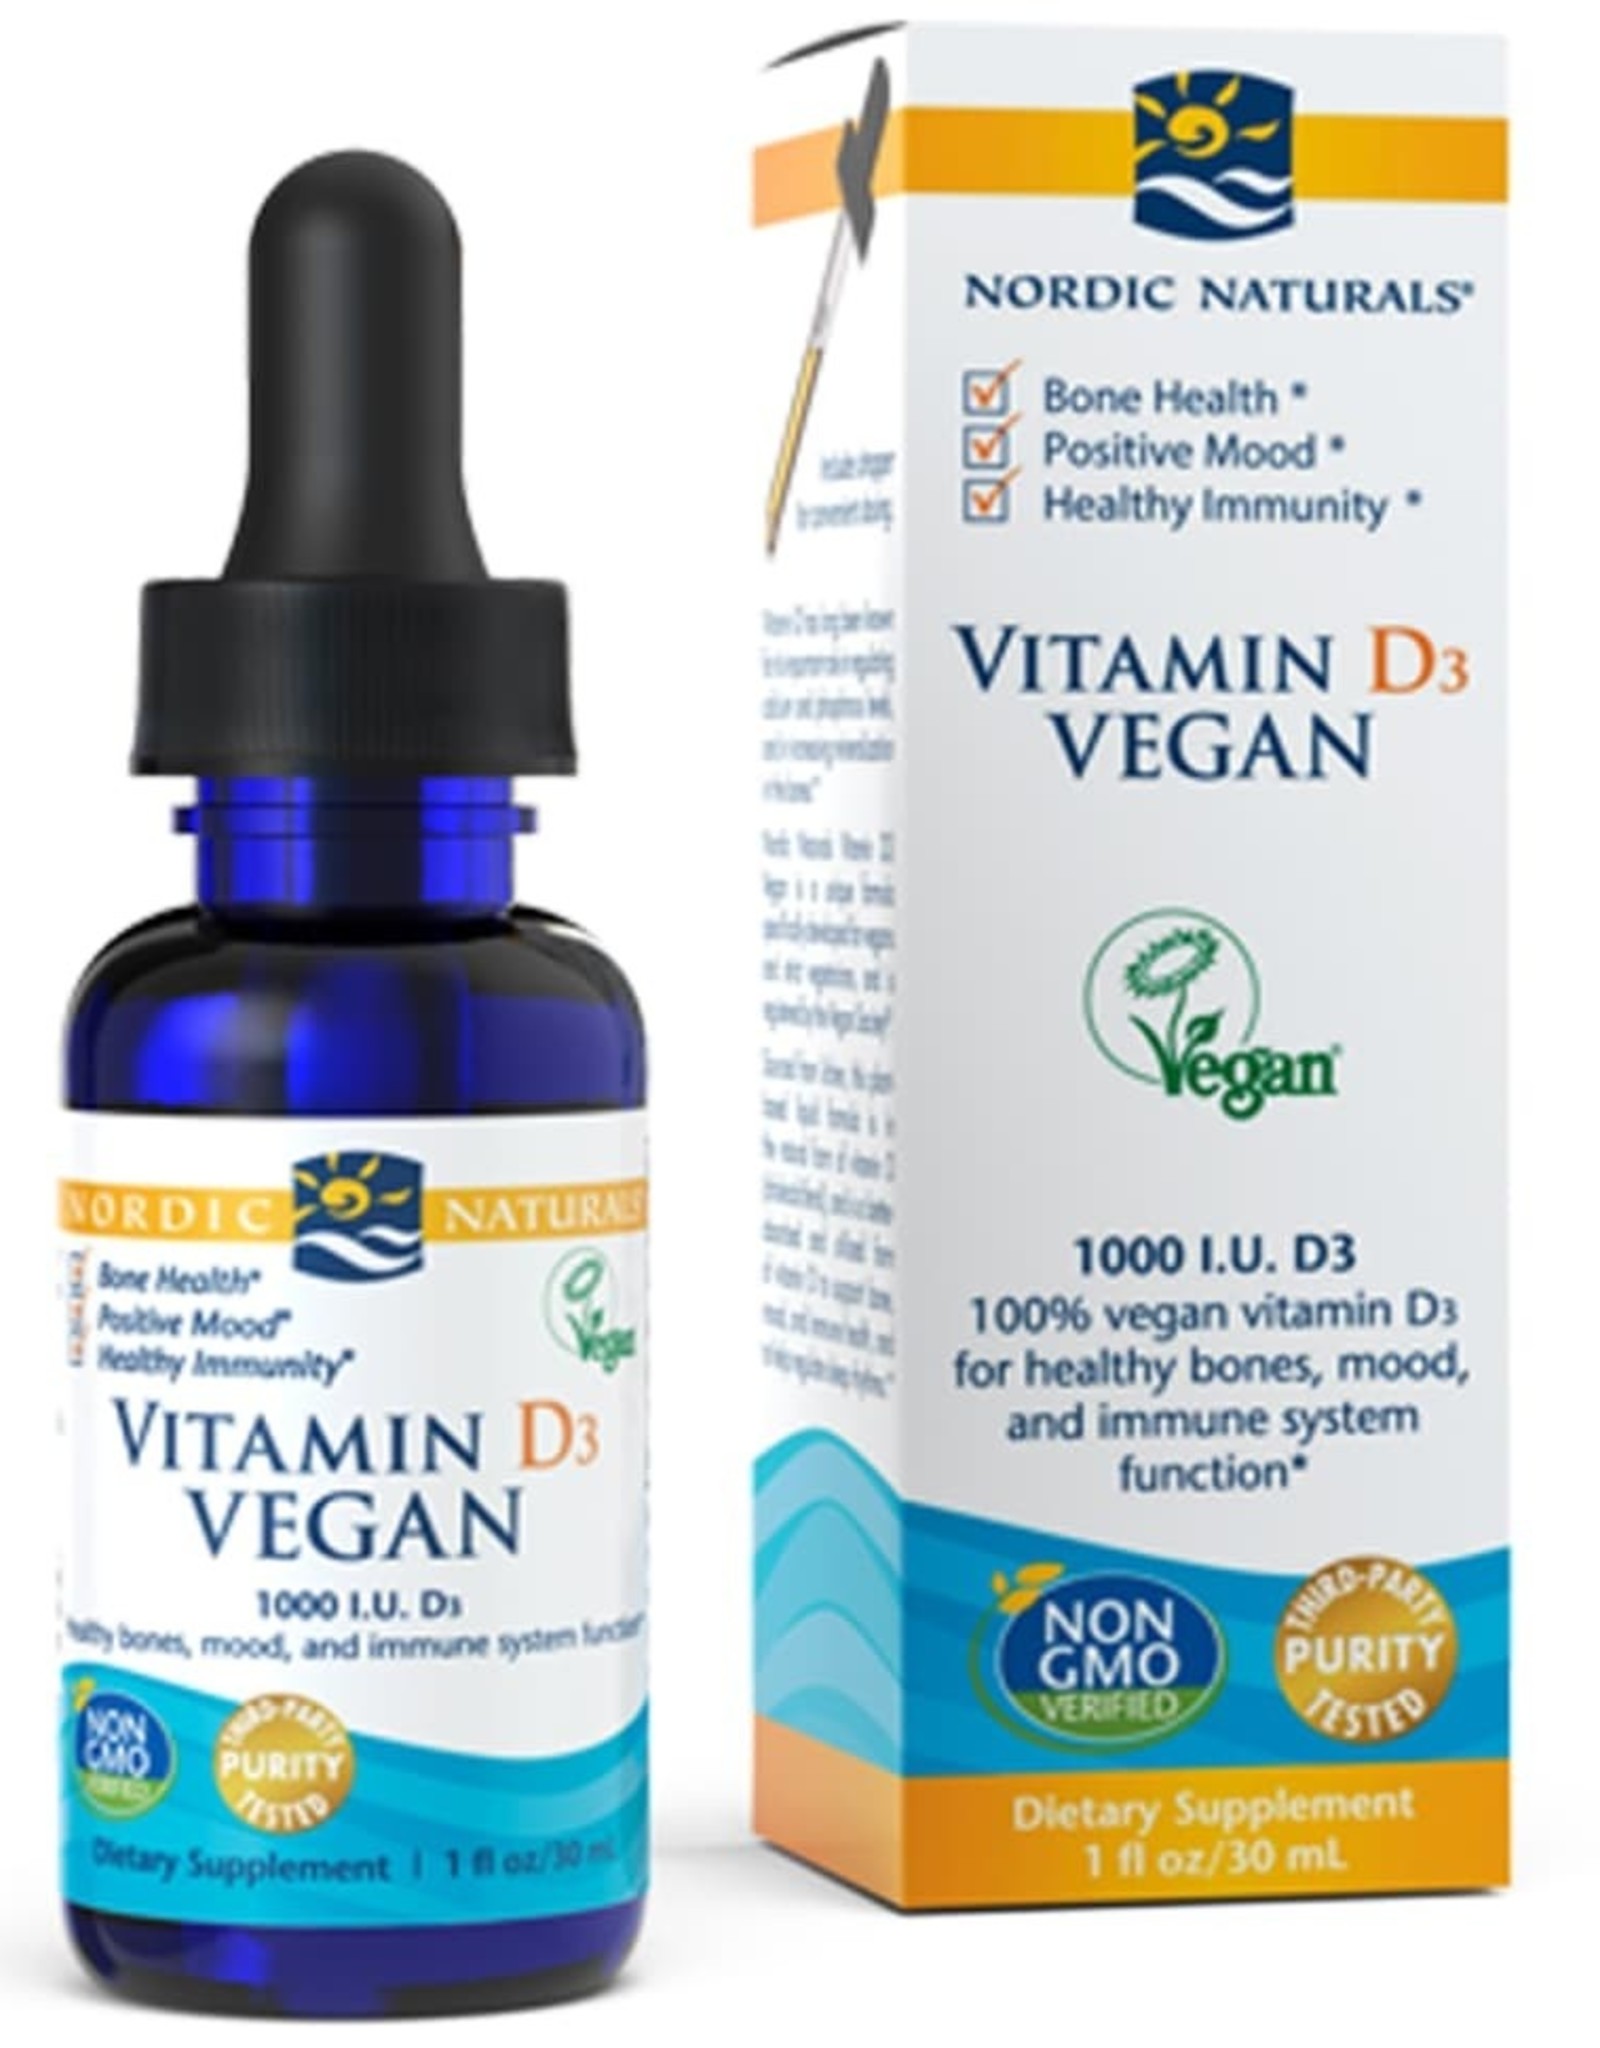 Nordic Naturals Vitamin D3 Vegan- Nordic Naturals